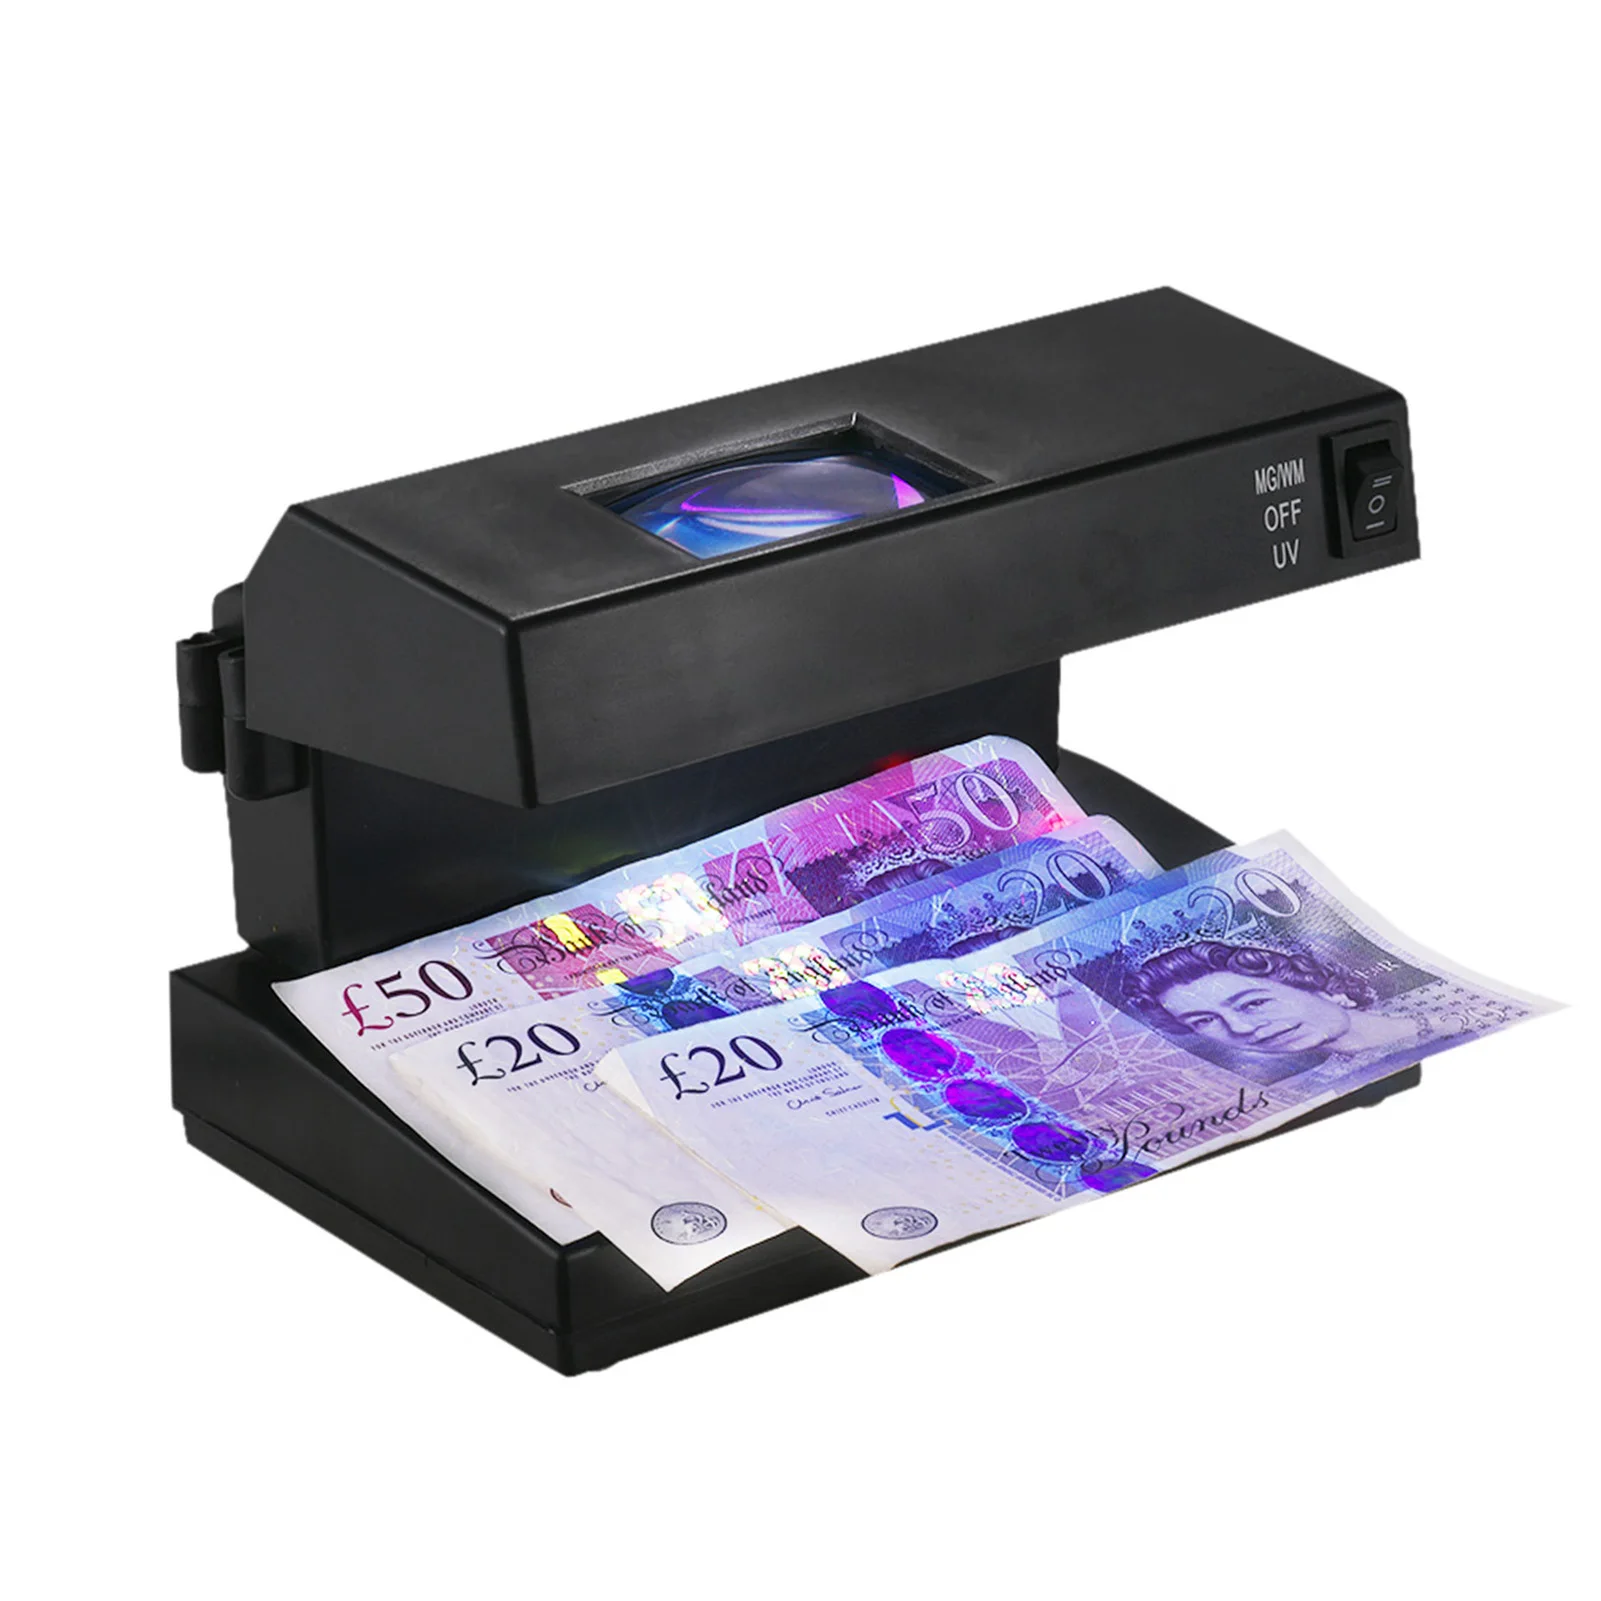 Přenosné ploše padělek návrh zákonu falešná lístek detektor hotové peníze devizy banknotes checker stroj ultrafialové záření UV lupa kované